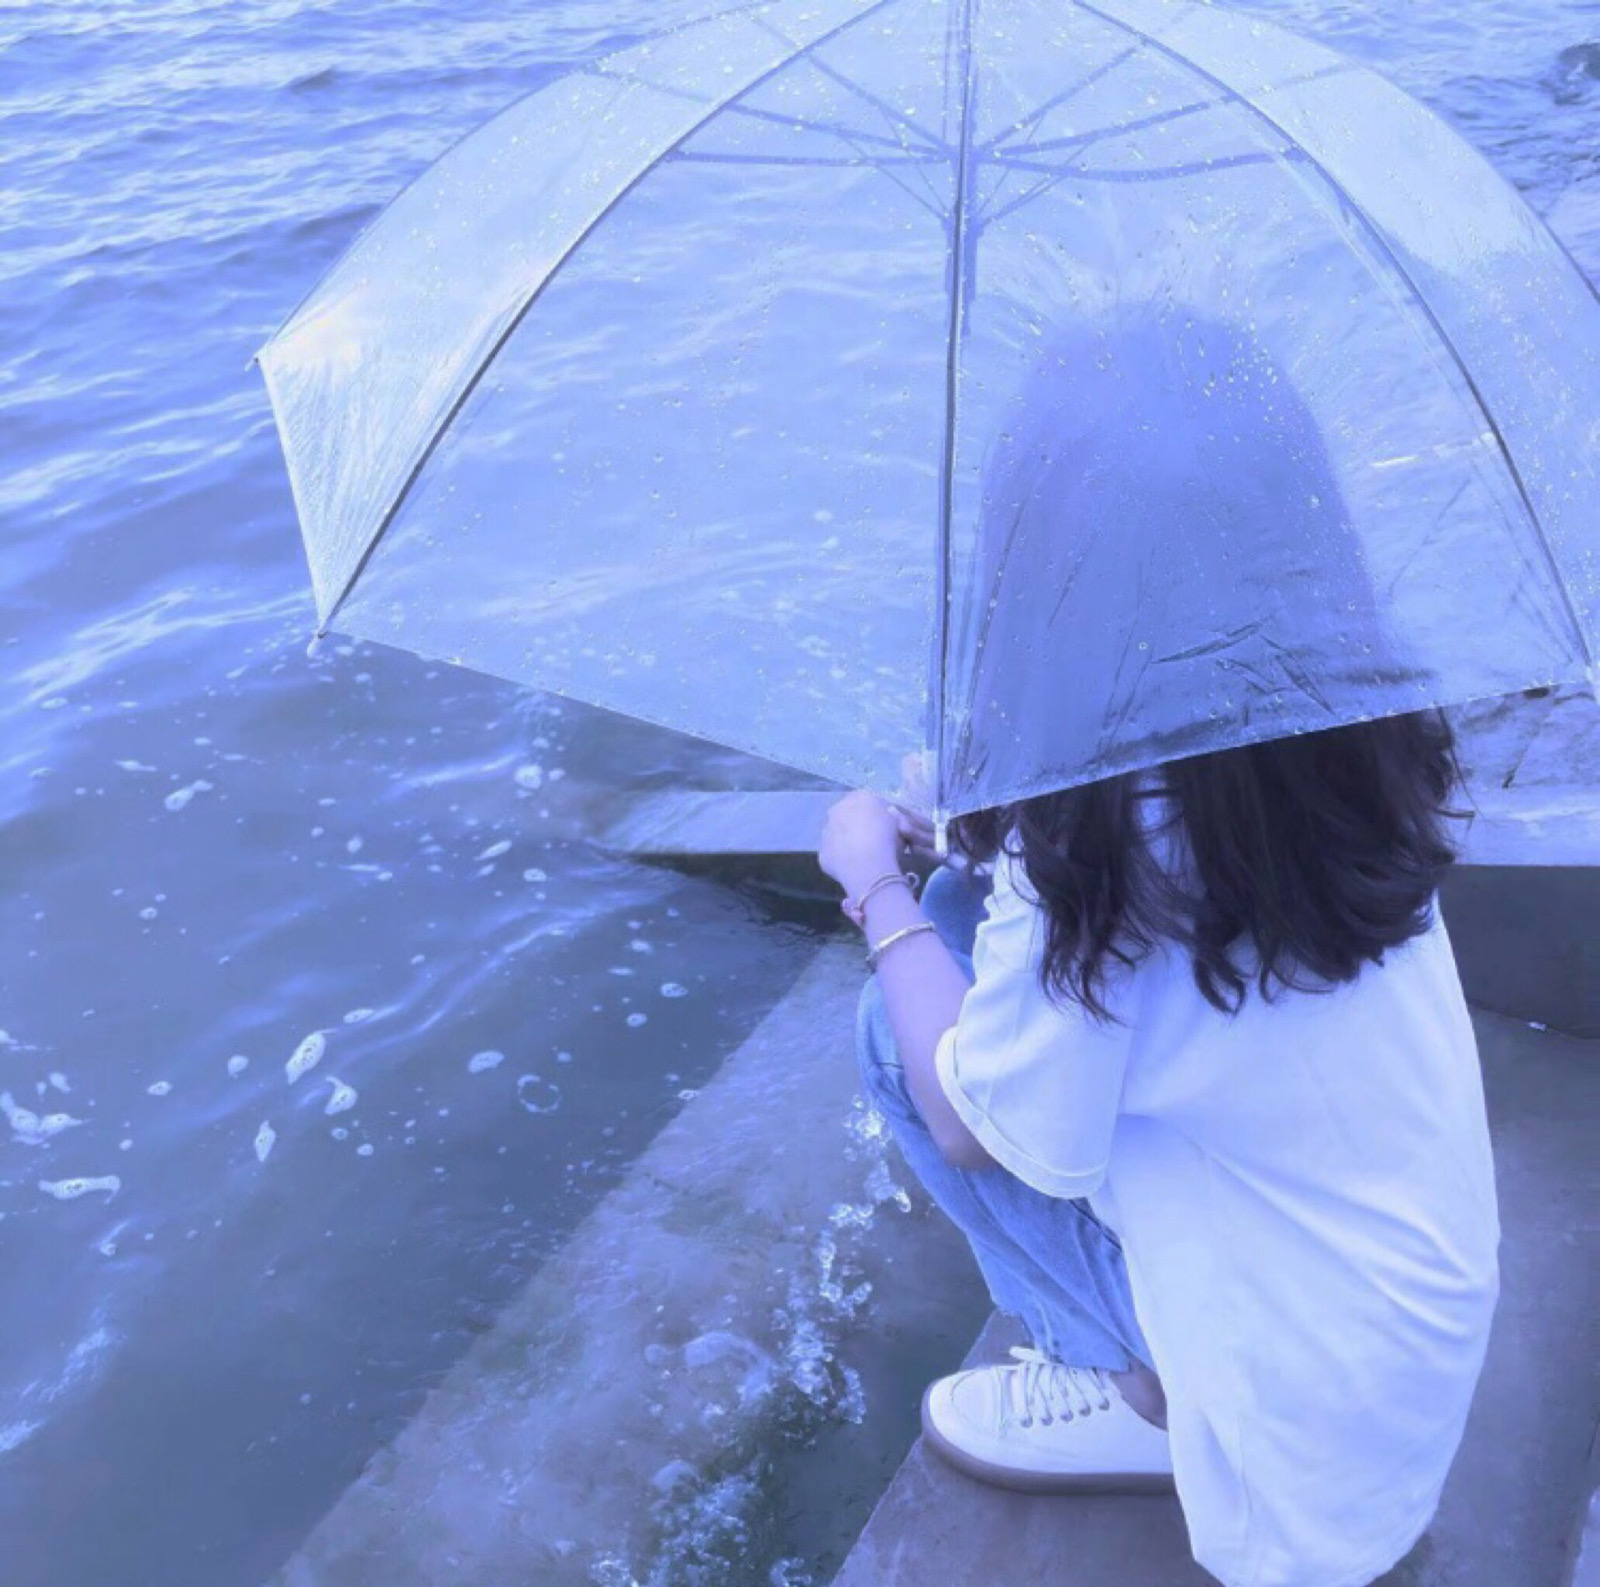 雨天撑伞,雨中打伞图片 背影 - 伤感说说吧